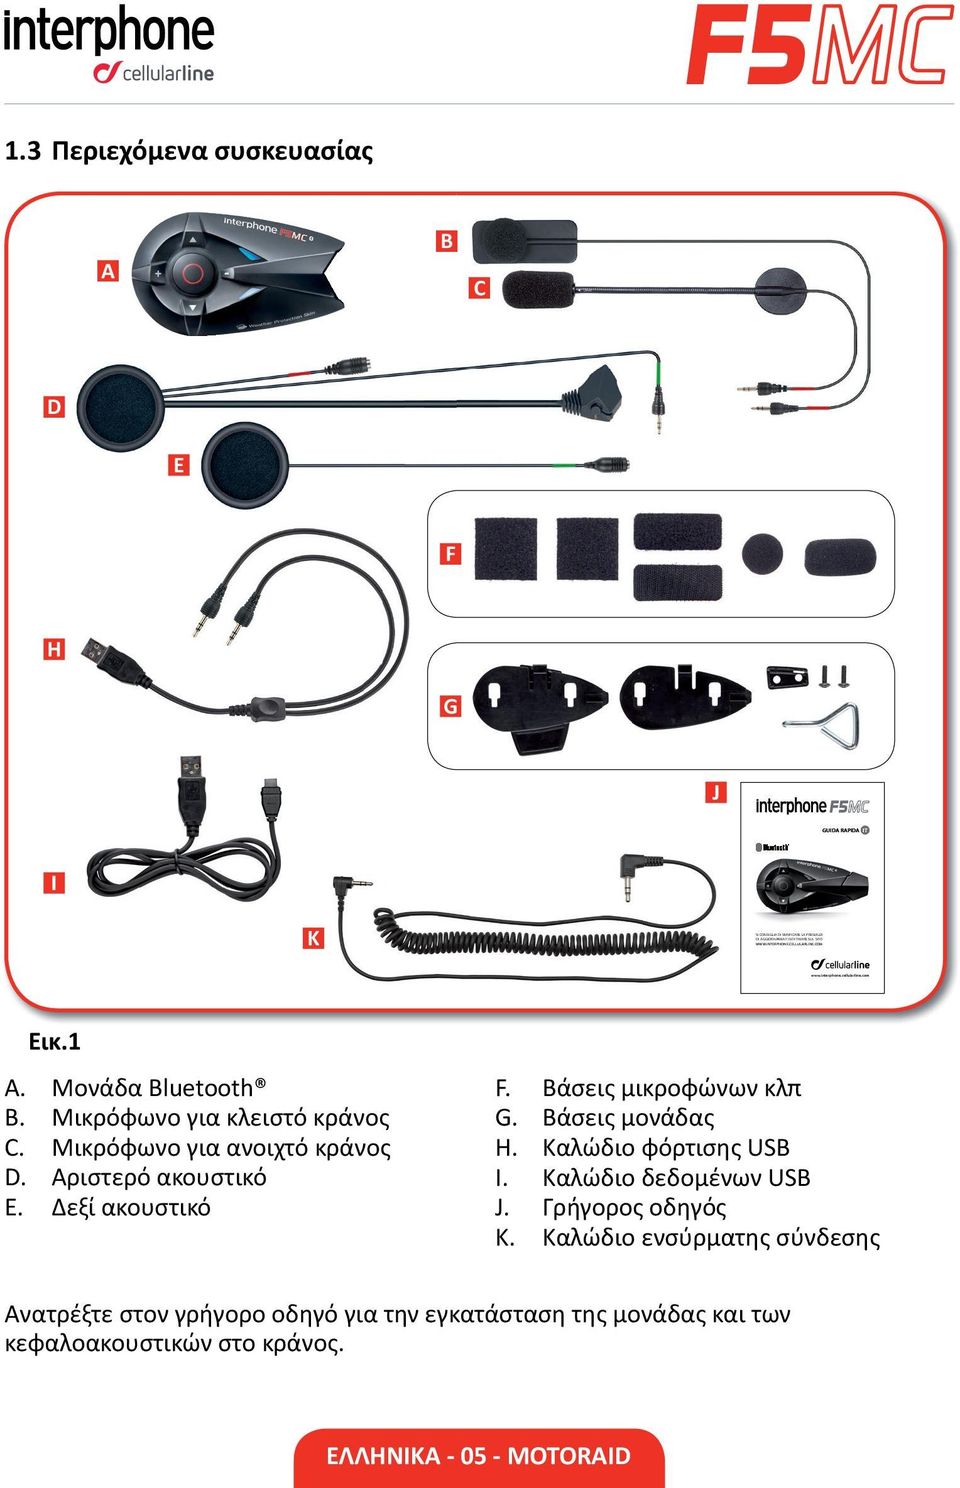 Μικρόφωνο για ανοιχτό κράνος D. Αριστερό ακουστικό E. Δεξί ακουστικό F. Βάσεις μικροφώνων κλπ G. Βάσεις μονάδας H. Καλώδιο φόρτισης USB I.